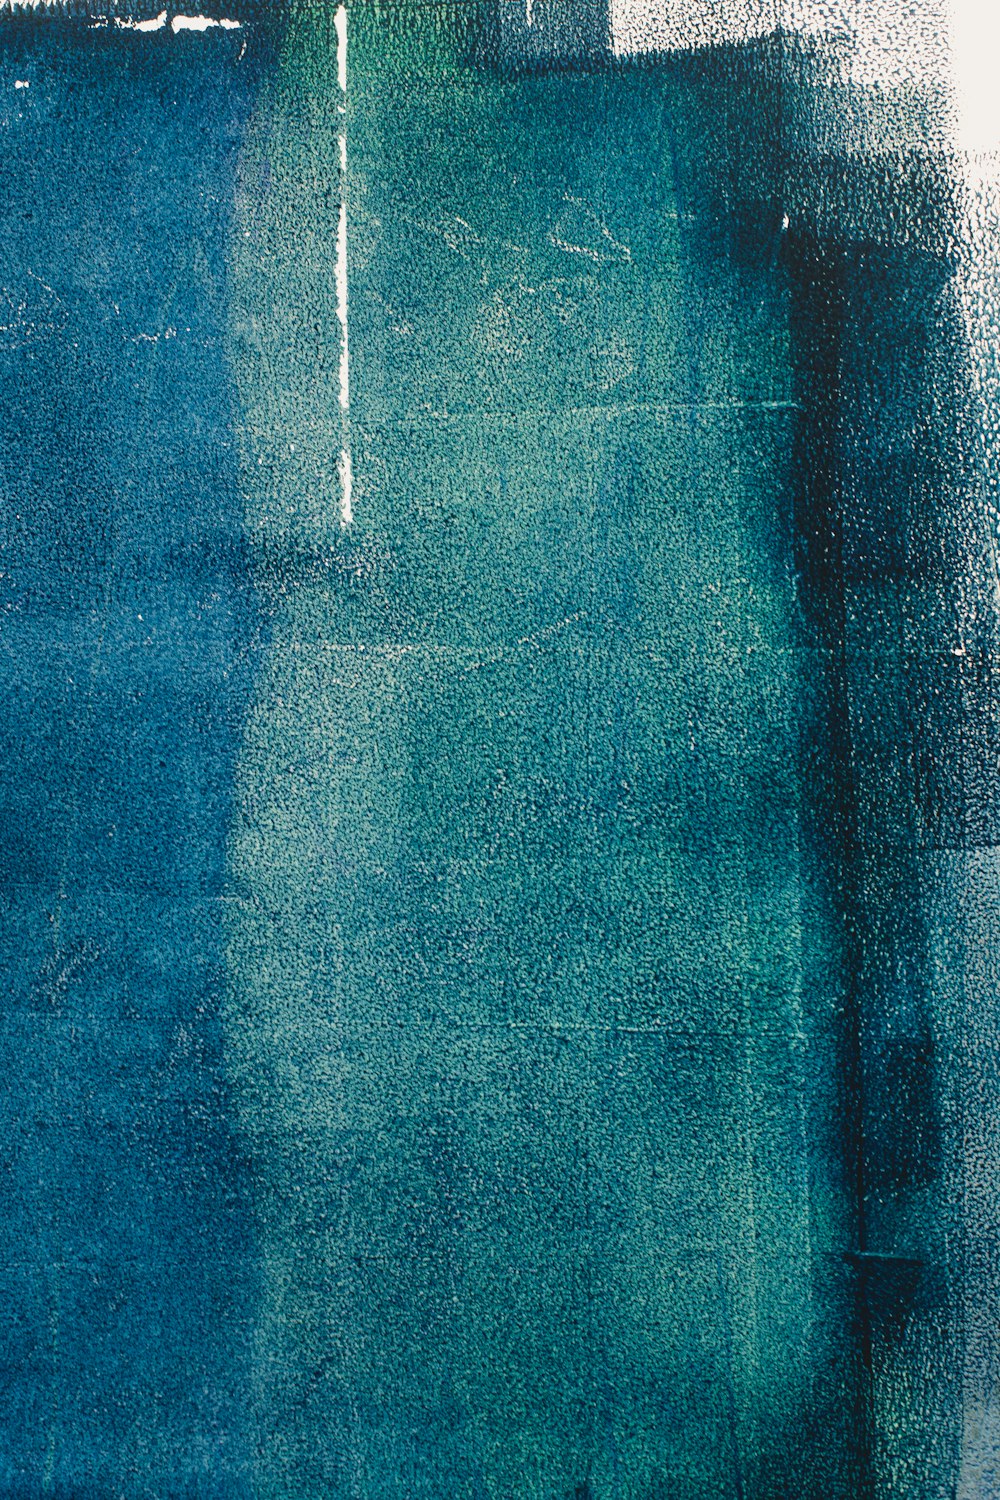 textil azul con gotas de agua